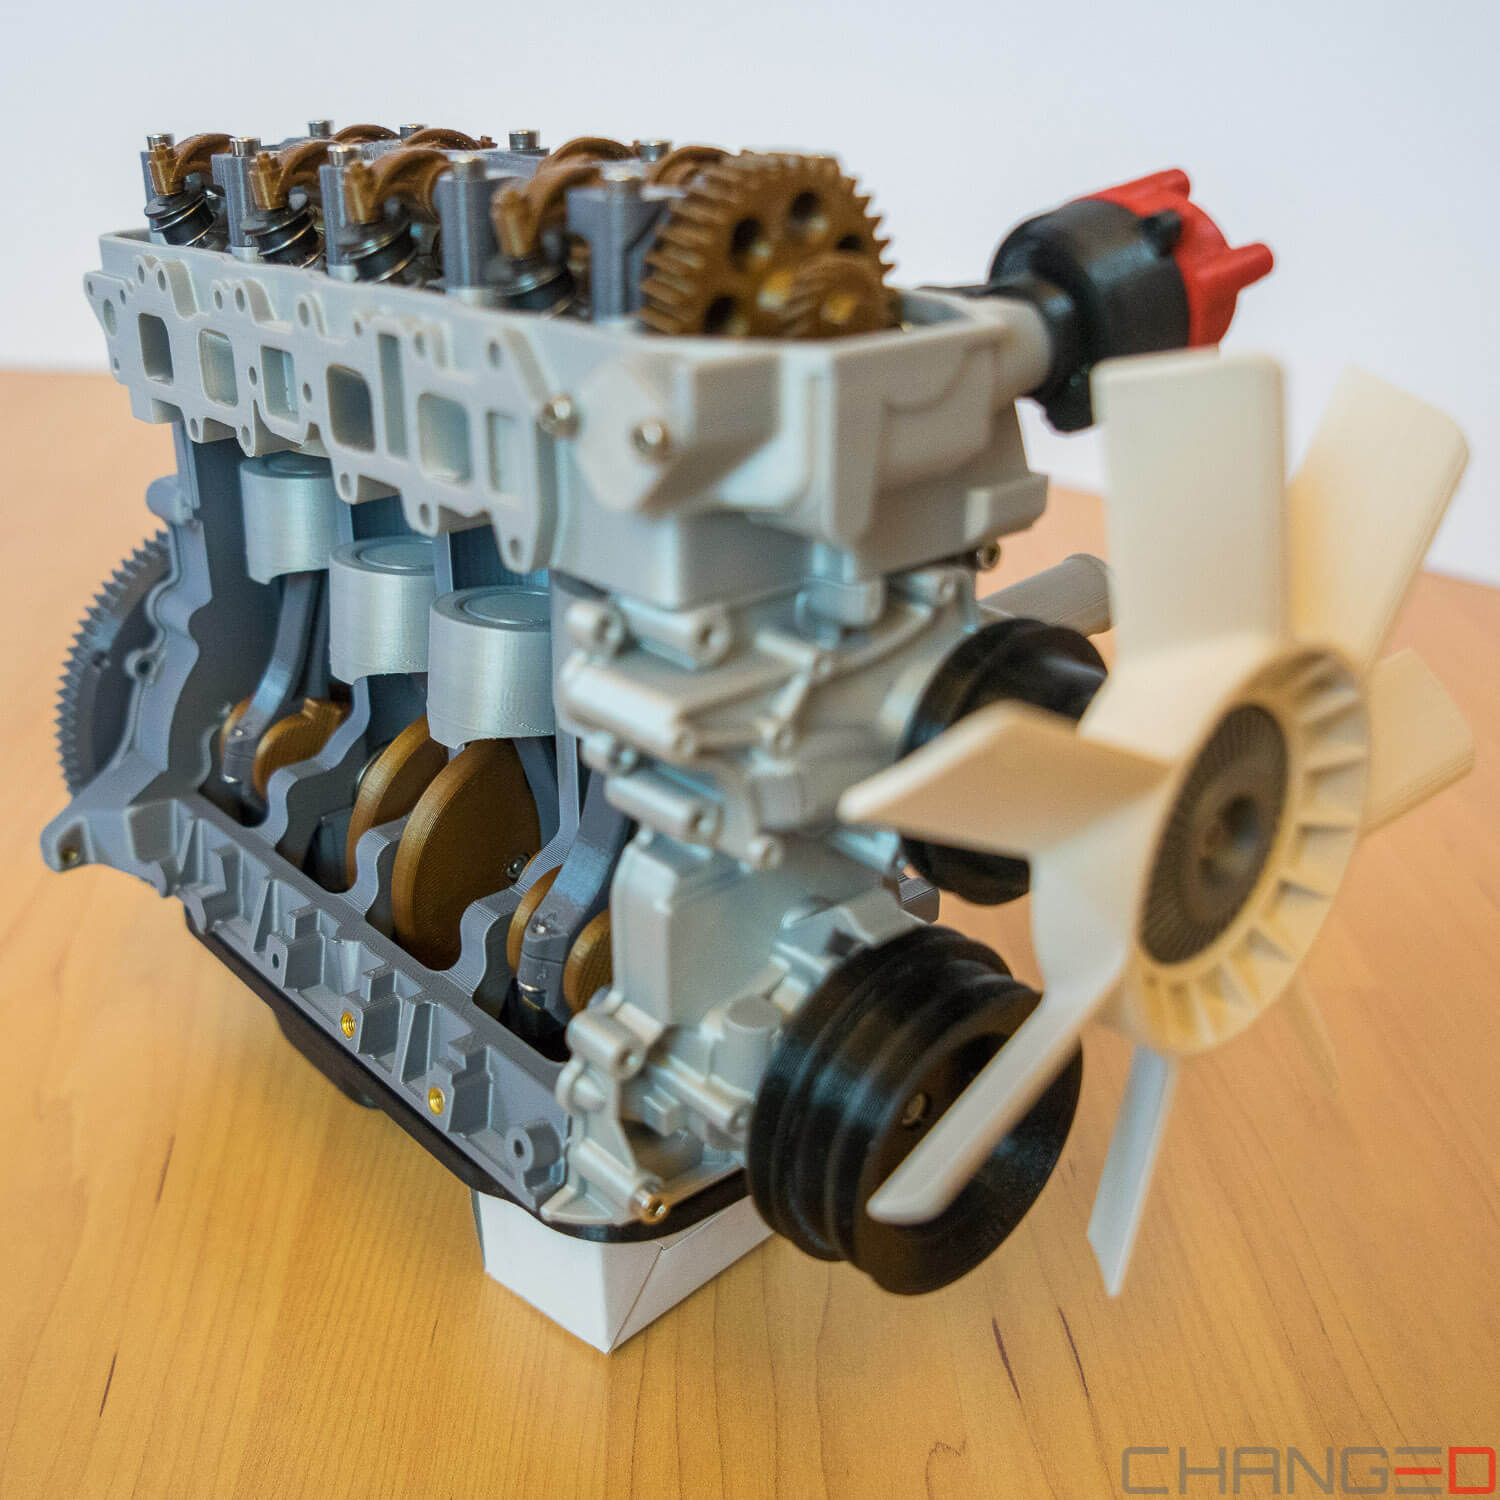 3D gedruckter Verbrennungsmotor als Schulungsobjekt.